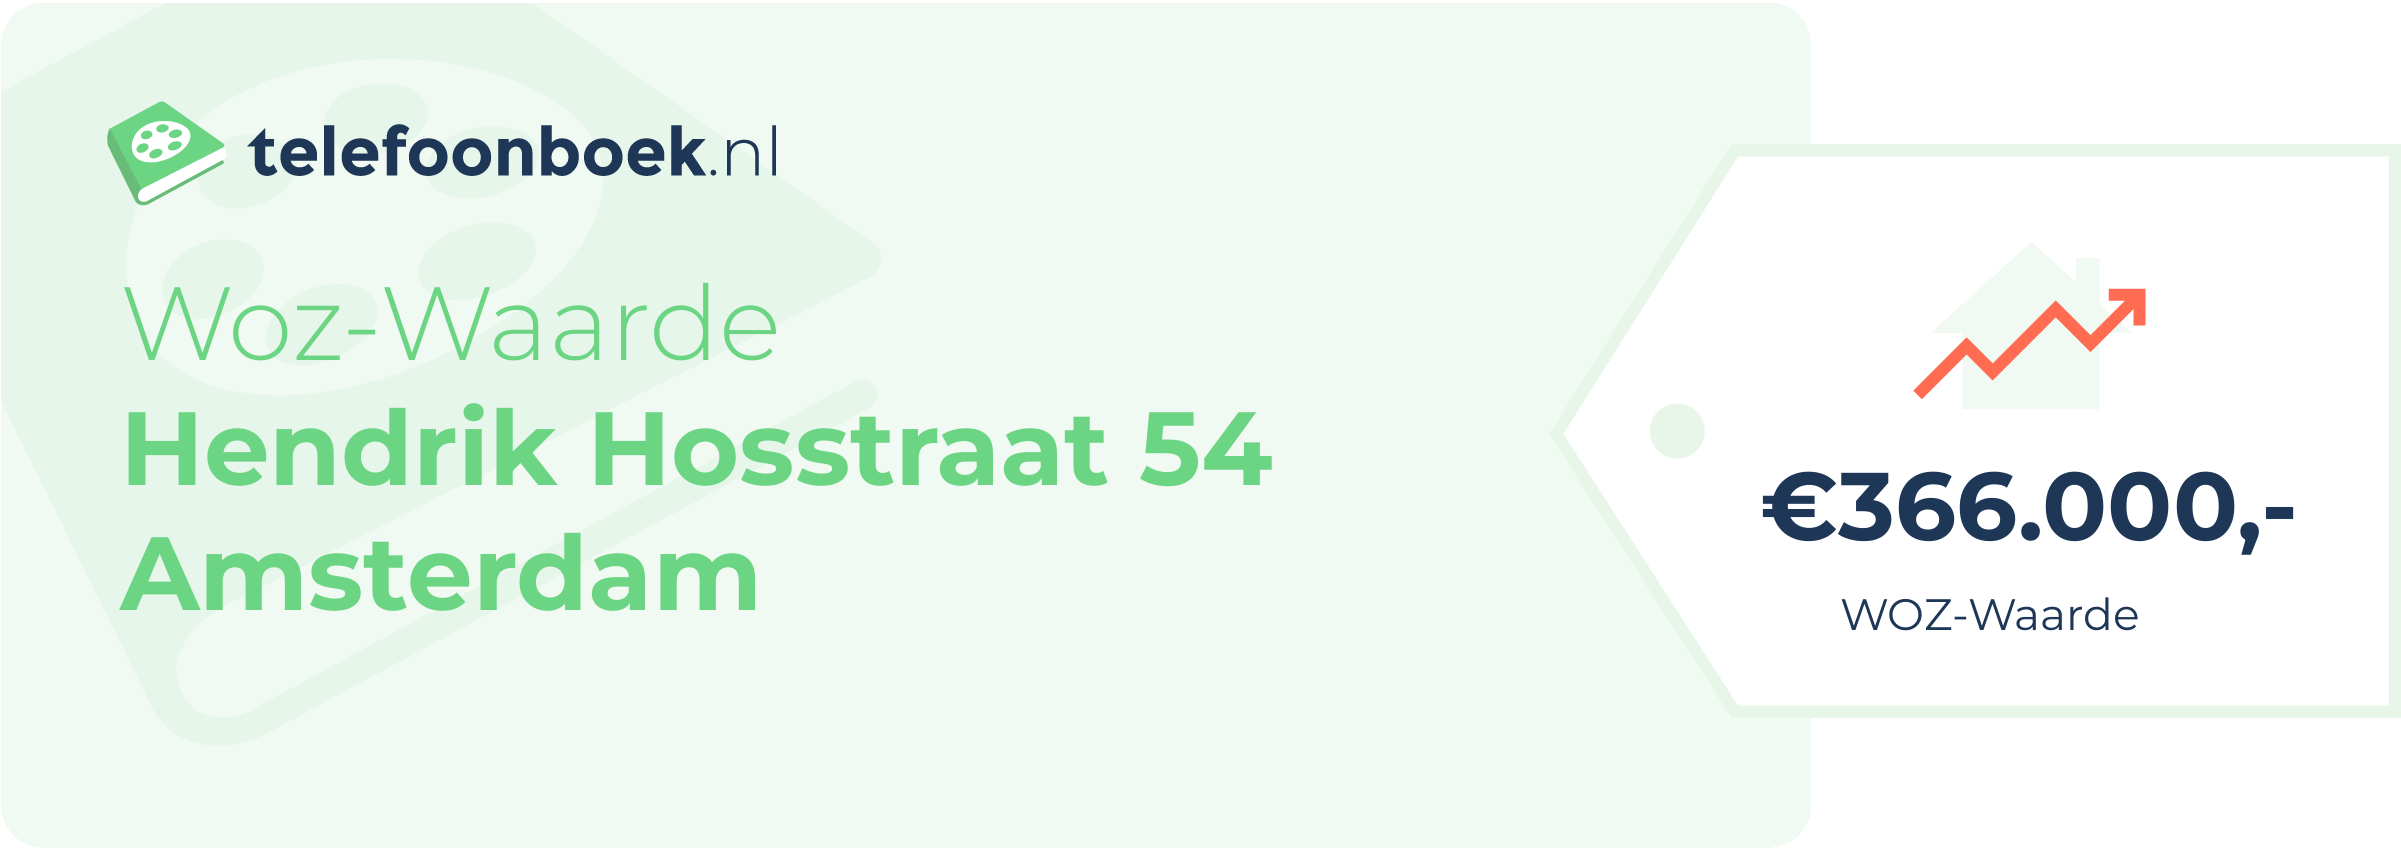 WOZ-waarde Hendrik Hosstraat 54 Amsterdam